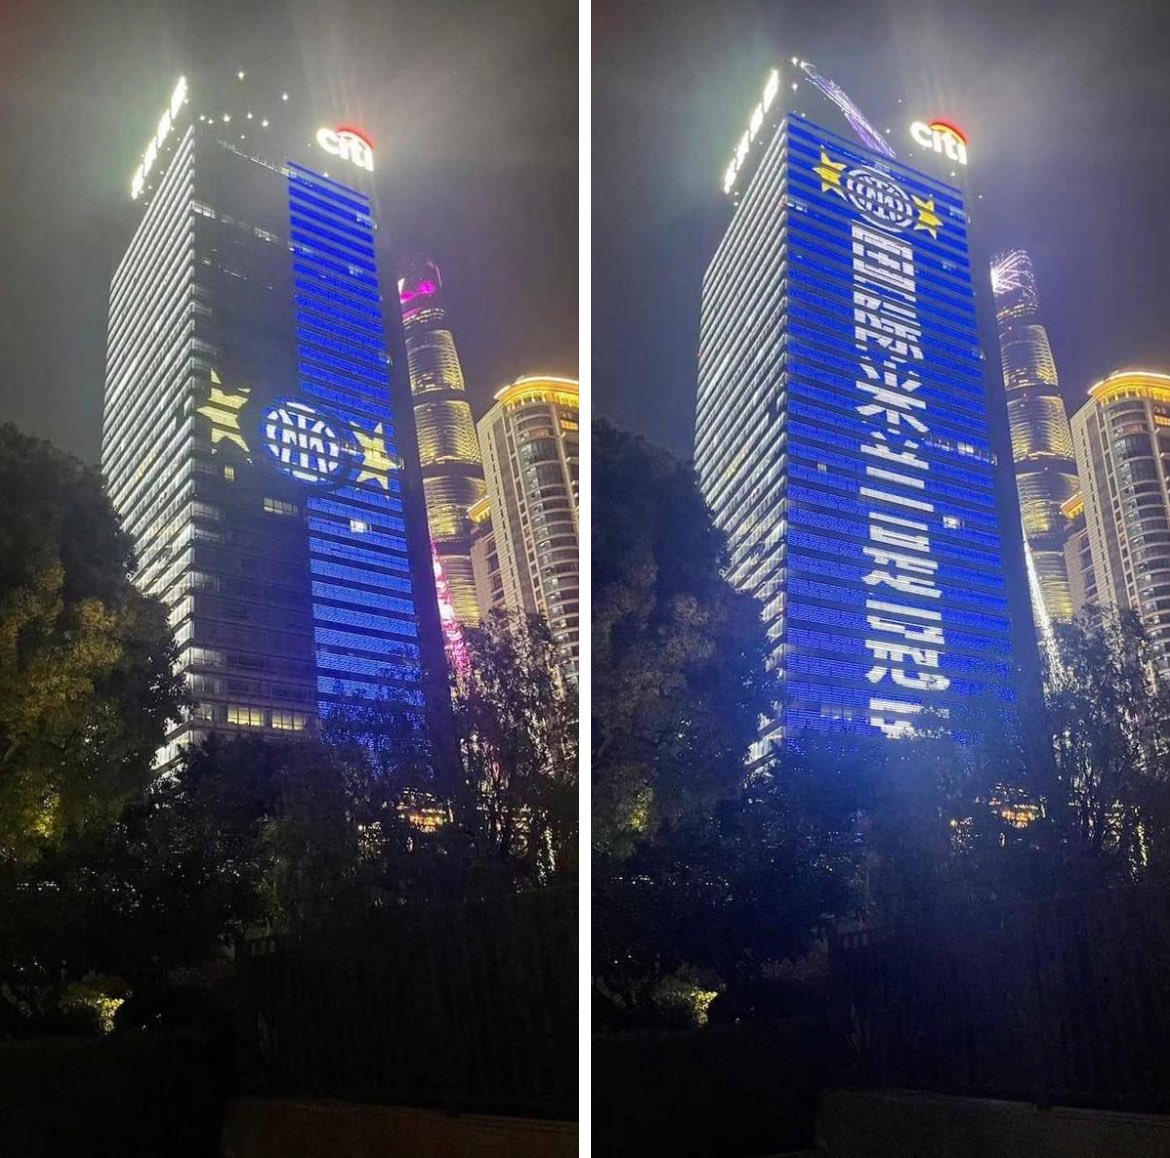 La città di Chongqing in Cina si è colorata di ⚫️🔵 per celebrare il 20 Scudetto dell‘Inter, con una scenografia spettacolare. I grattacieli illuminati di nerazzurro fanno parte di grosse banche cinesi come China Citic Bank, Bank of Communications China e China Development Bank.